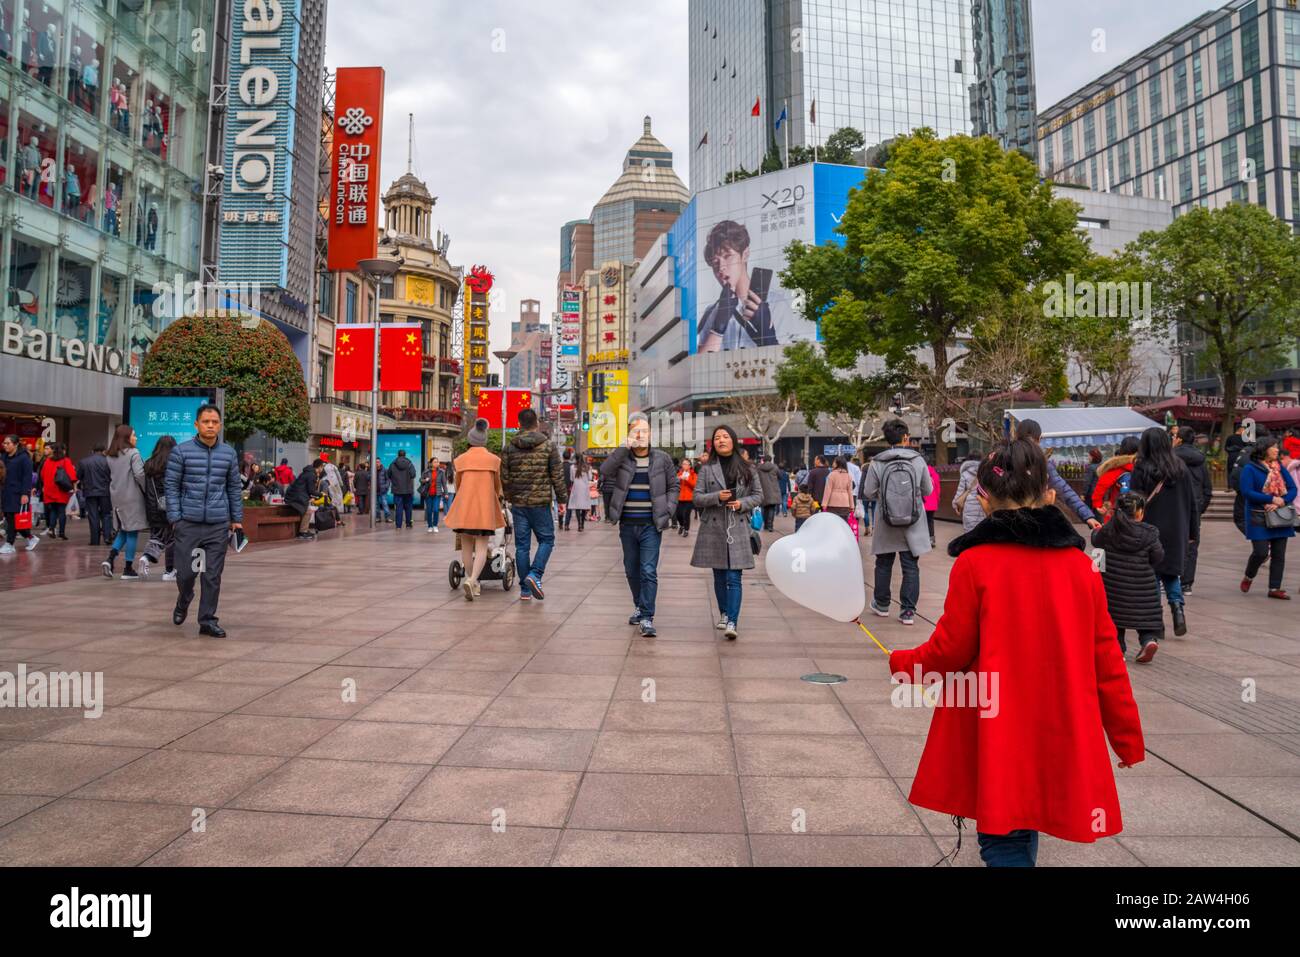 Shanghai, CHINA - 14. FEBRUAR 2018: Menschen, die auf der Nanjing Road spazieren. Die Gegend ist das Haupteinkaufsviertel Shanghais und eines der geschäftigsten der Welt Stockfoto